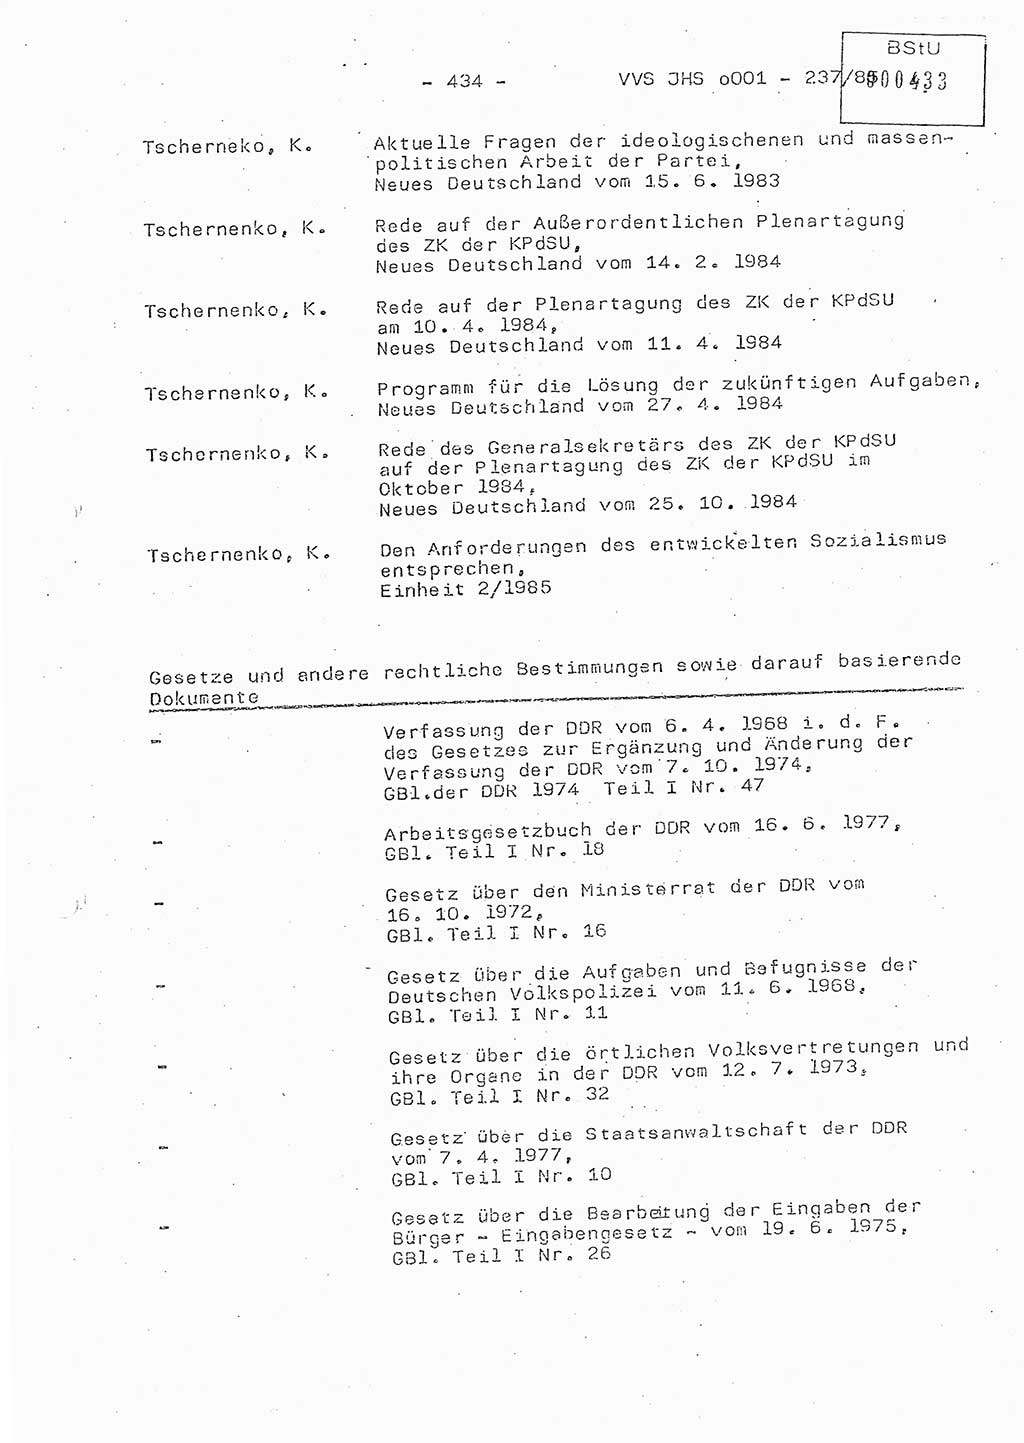 Dissertation Oberstleutnant Peter Jakulski (JHS), Oberstleutnat Christian Rudolph (HA Ⅸ), Major Horst Böttger (ZMD), Major Wolfgang Grüneberg (JHS), Major Albert Meutsch (JHS), Ministerium für Staatssicherheit (MfS) [Deutsche Demokratische Republik (DDR)], Juristische Hochschule (JHS), Vertrauliche Verschlußsache (VVS) o001-237/85, Potsdam 1985, Seite 434 (Diss. MfS DDR JHS VVS o001-237/85 1985, S. 434)